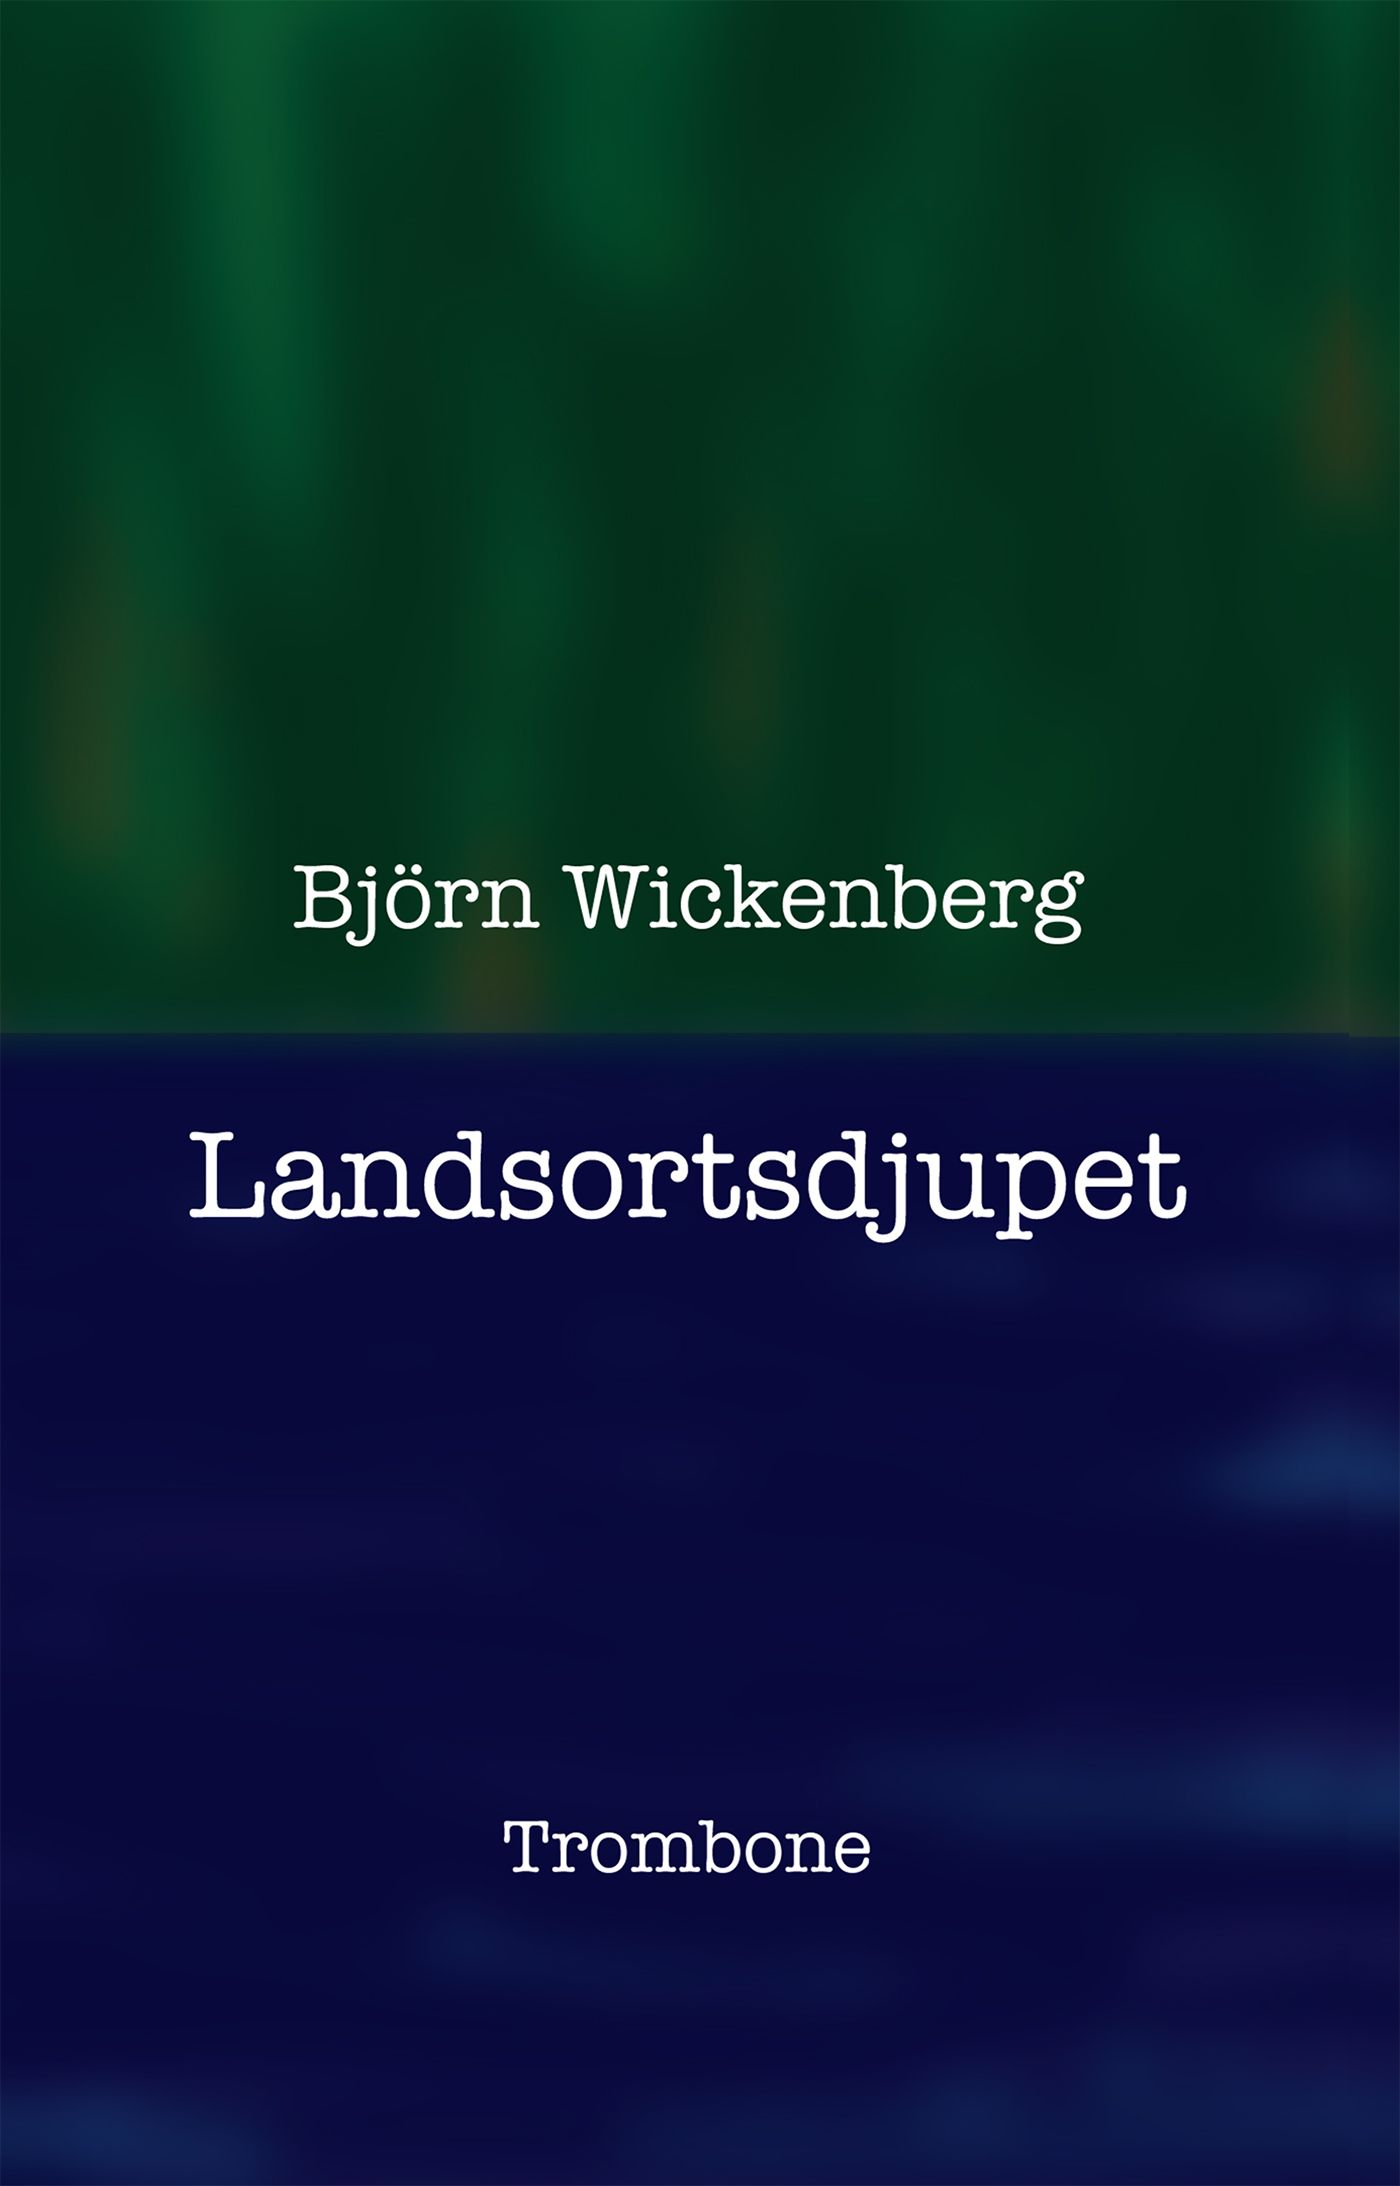 Landsortsdjupet, e-bok av Björn Wickenberg